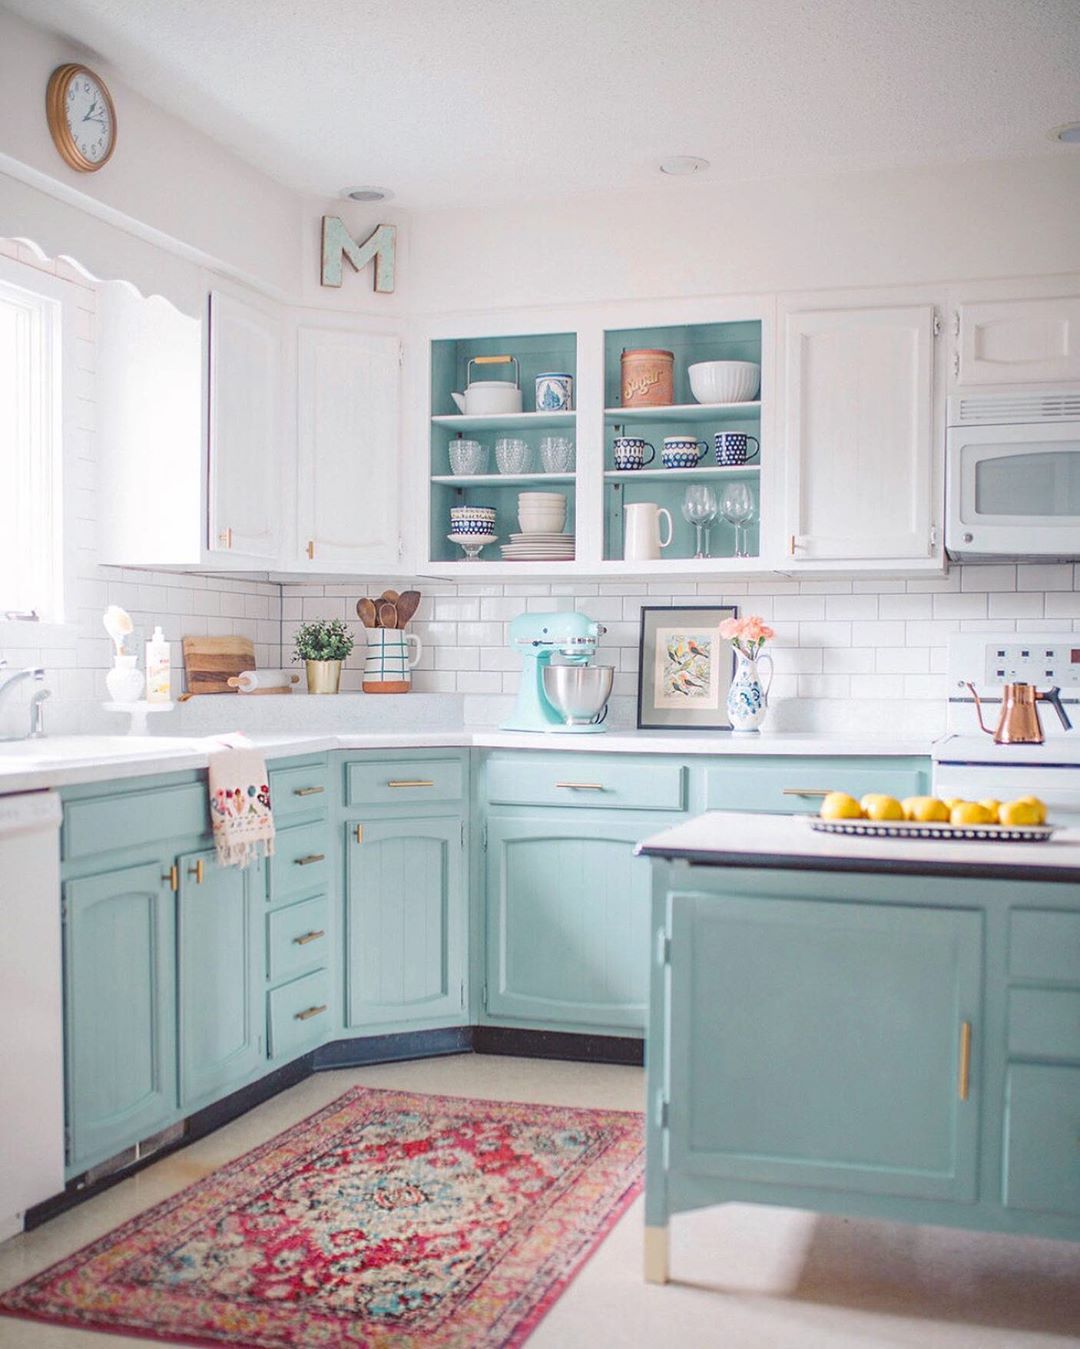 Với những căn bếp có gam màu trắng làm chủ đạo, bạn thử lựa chọn sơn tủ màu xanh bạc hà, gam màu như mang cả không khí tươi mát vào nhà của bạn.